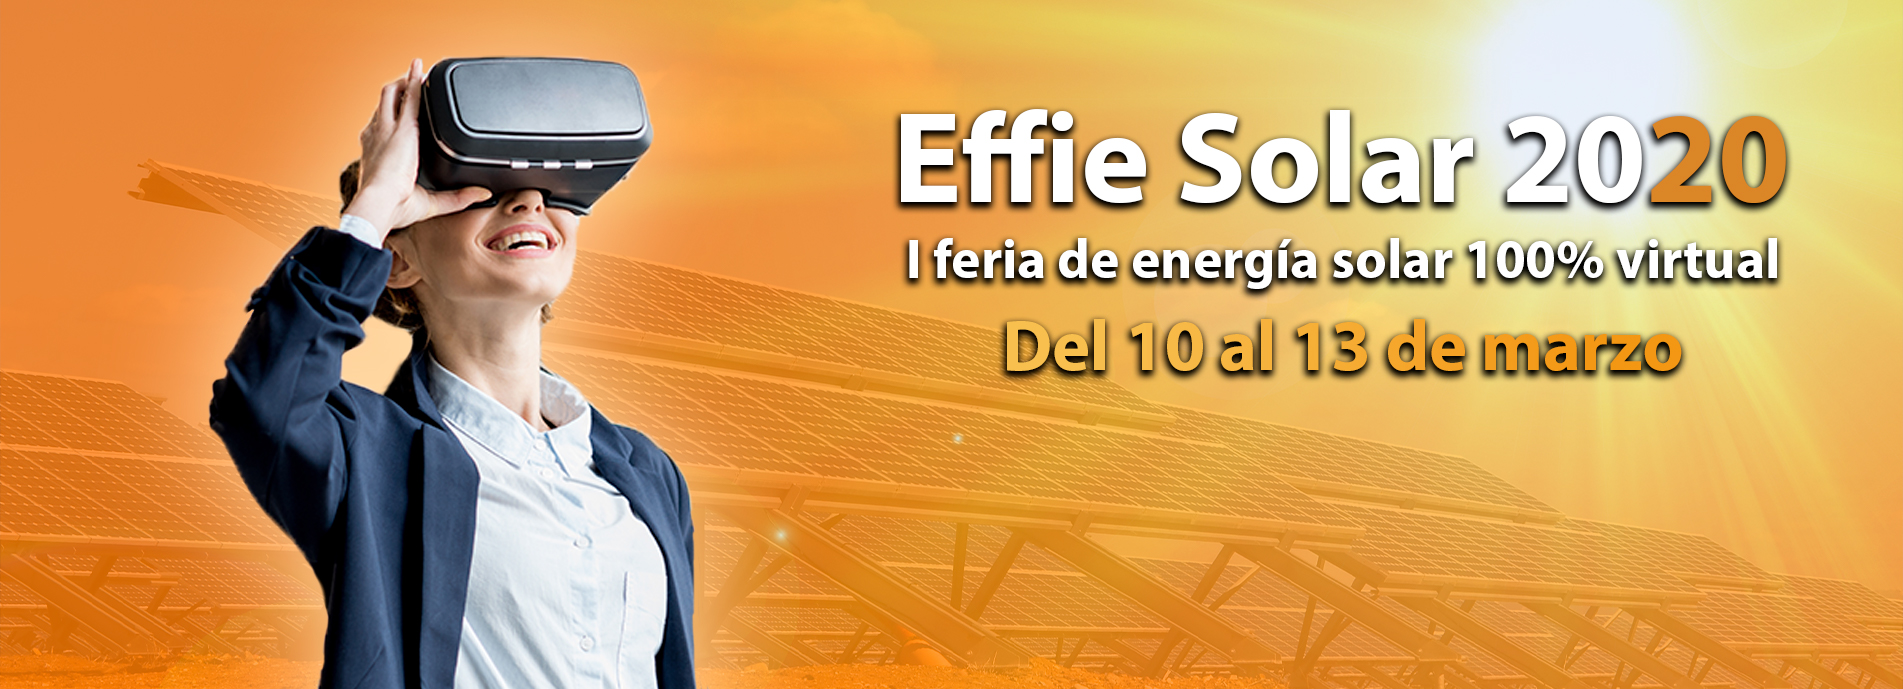 Effie Solar - I Feria Visrtual de Energia Solar